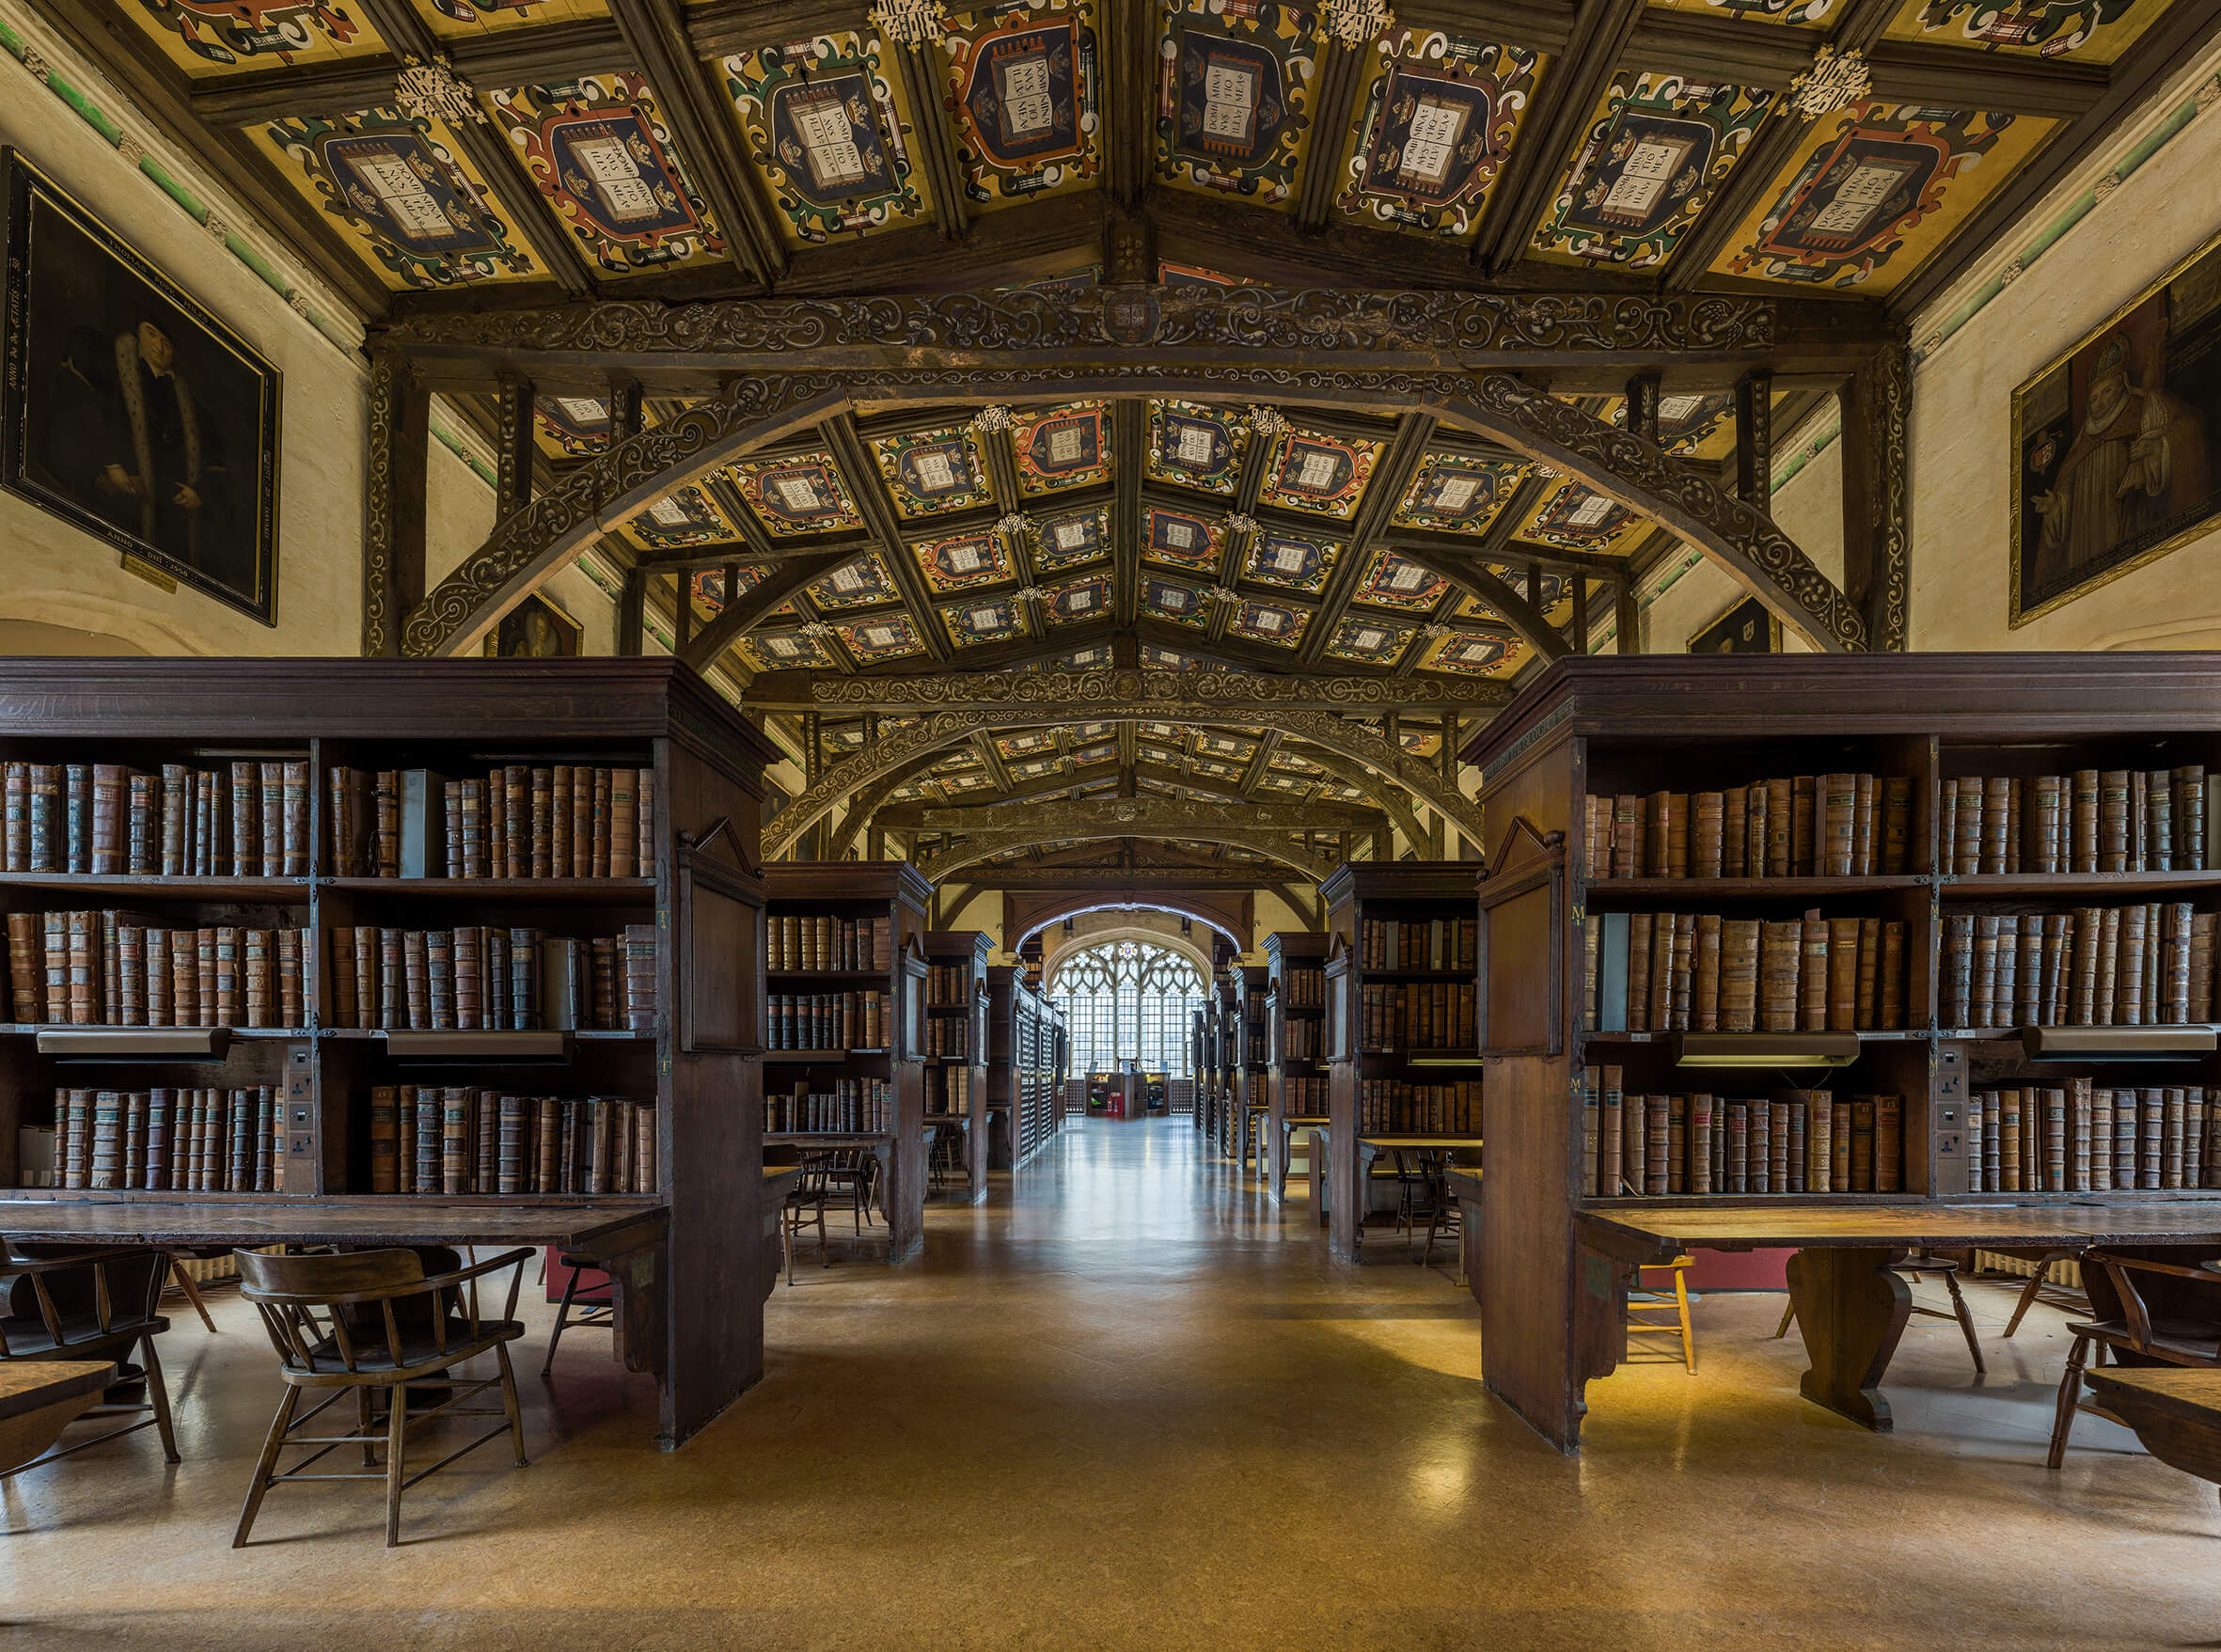 Common library. Оксфорд университет Бодлианская библиотека. Библиотека Хогвартса Бодлианская библиотека Оксфорд. Бодлианская библиотека Оксфордского университета (Оксфорд, 1602). Бодлианская библиотеки Оксфорда,  Великобритания.